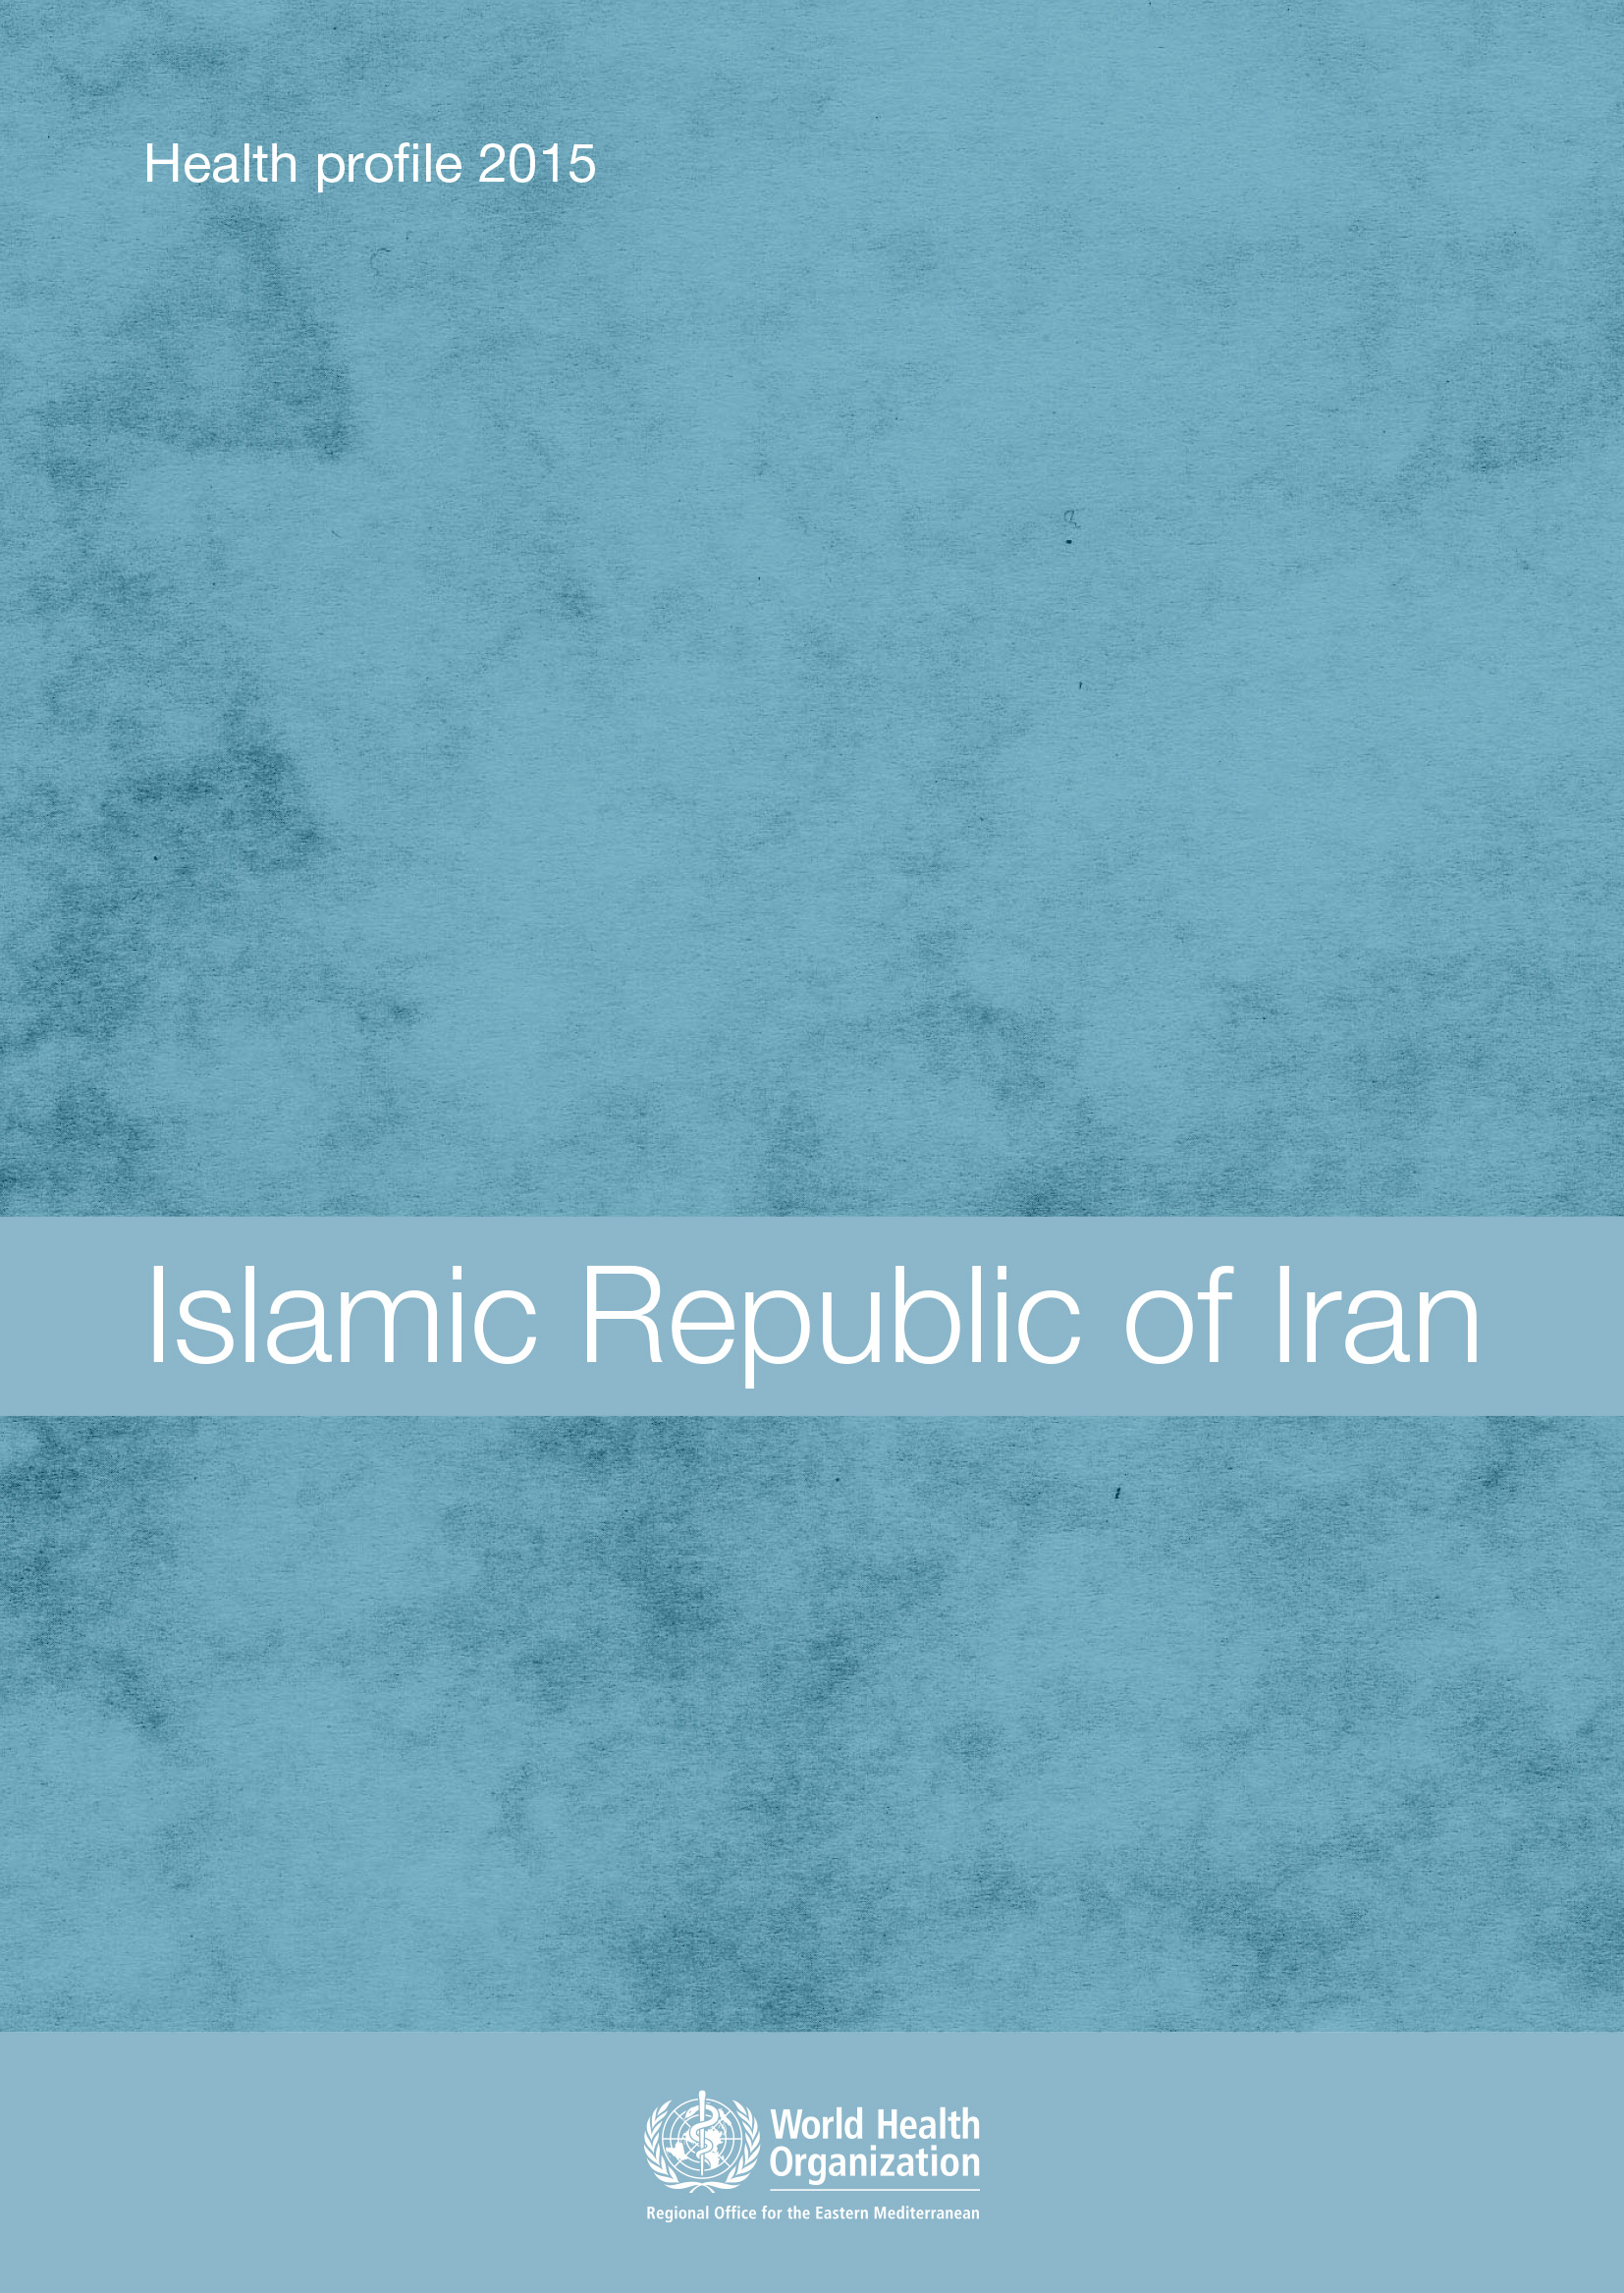 Profil de santé de la République islamique d'Iran 2015 